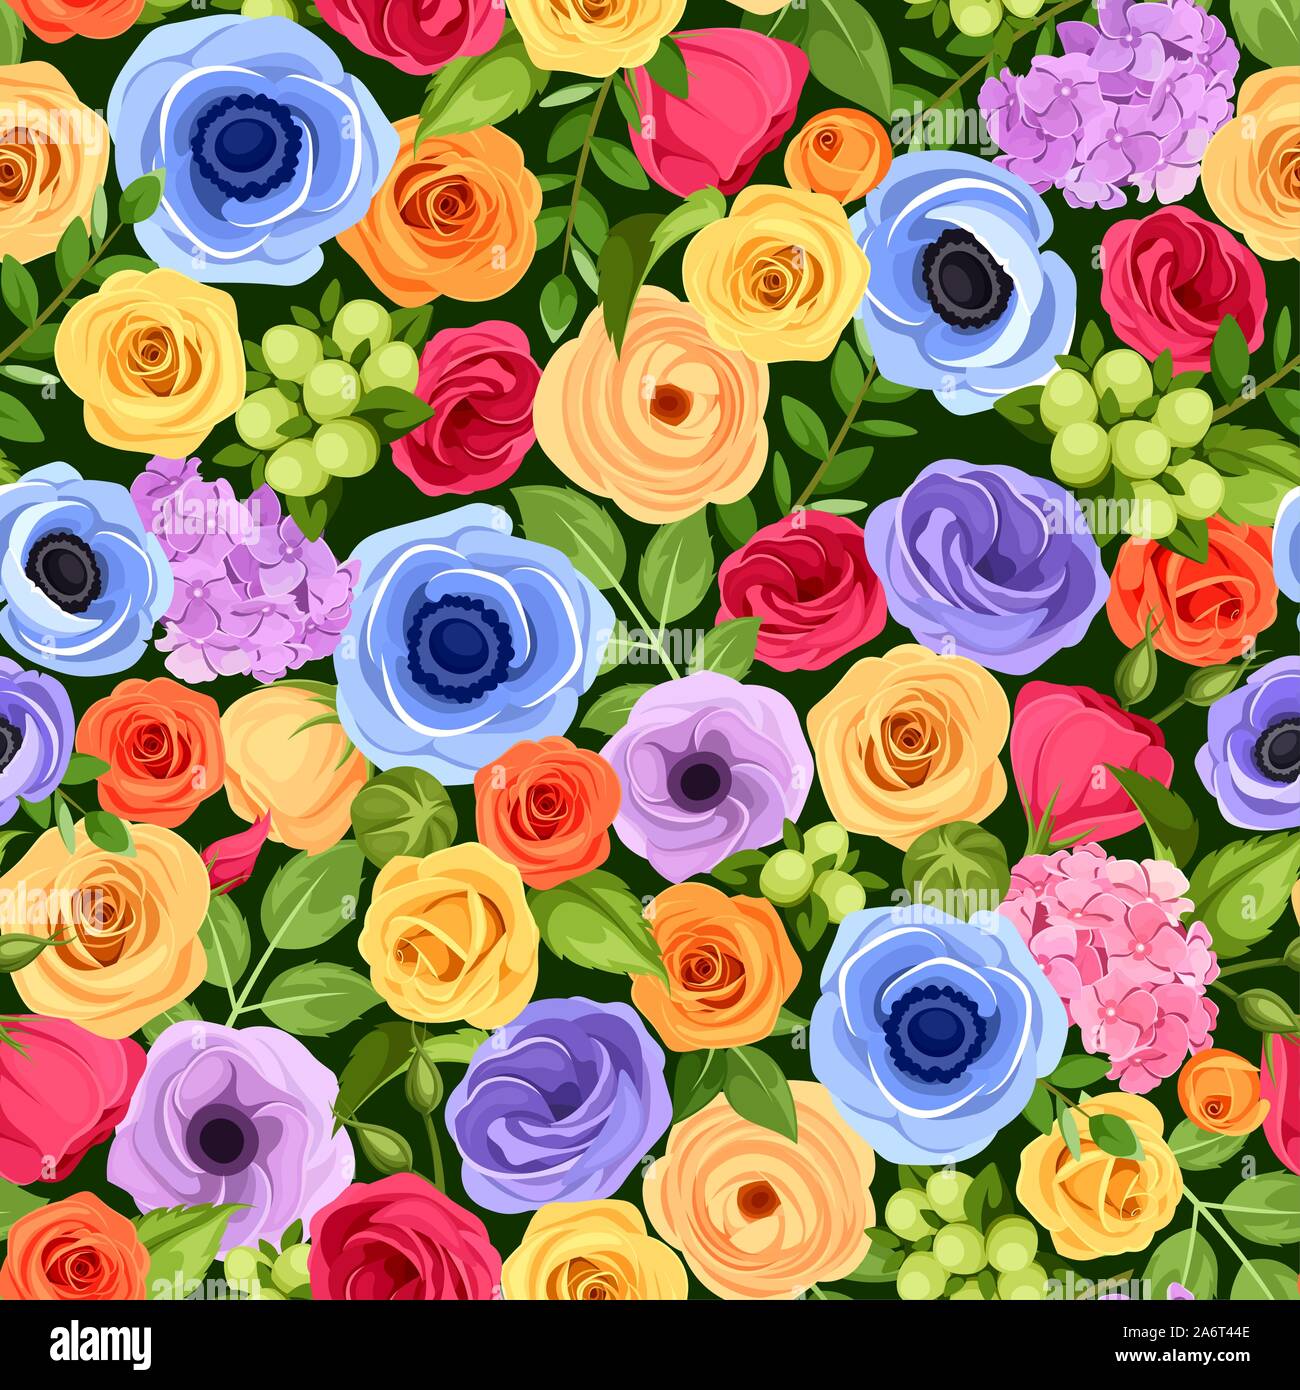 Vector de fondo sin fisuras con rojo, naranja, amarillo, azul y violeta, flores y hojas verdes. Ilustración del Vector